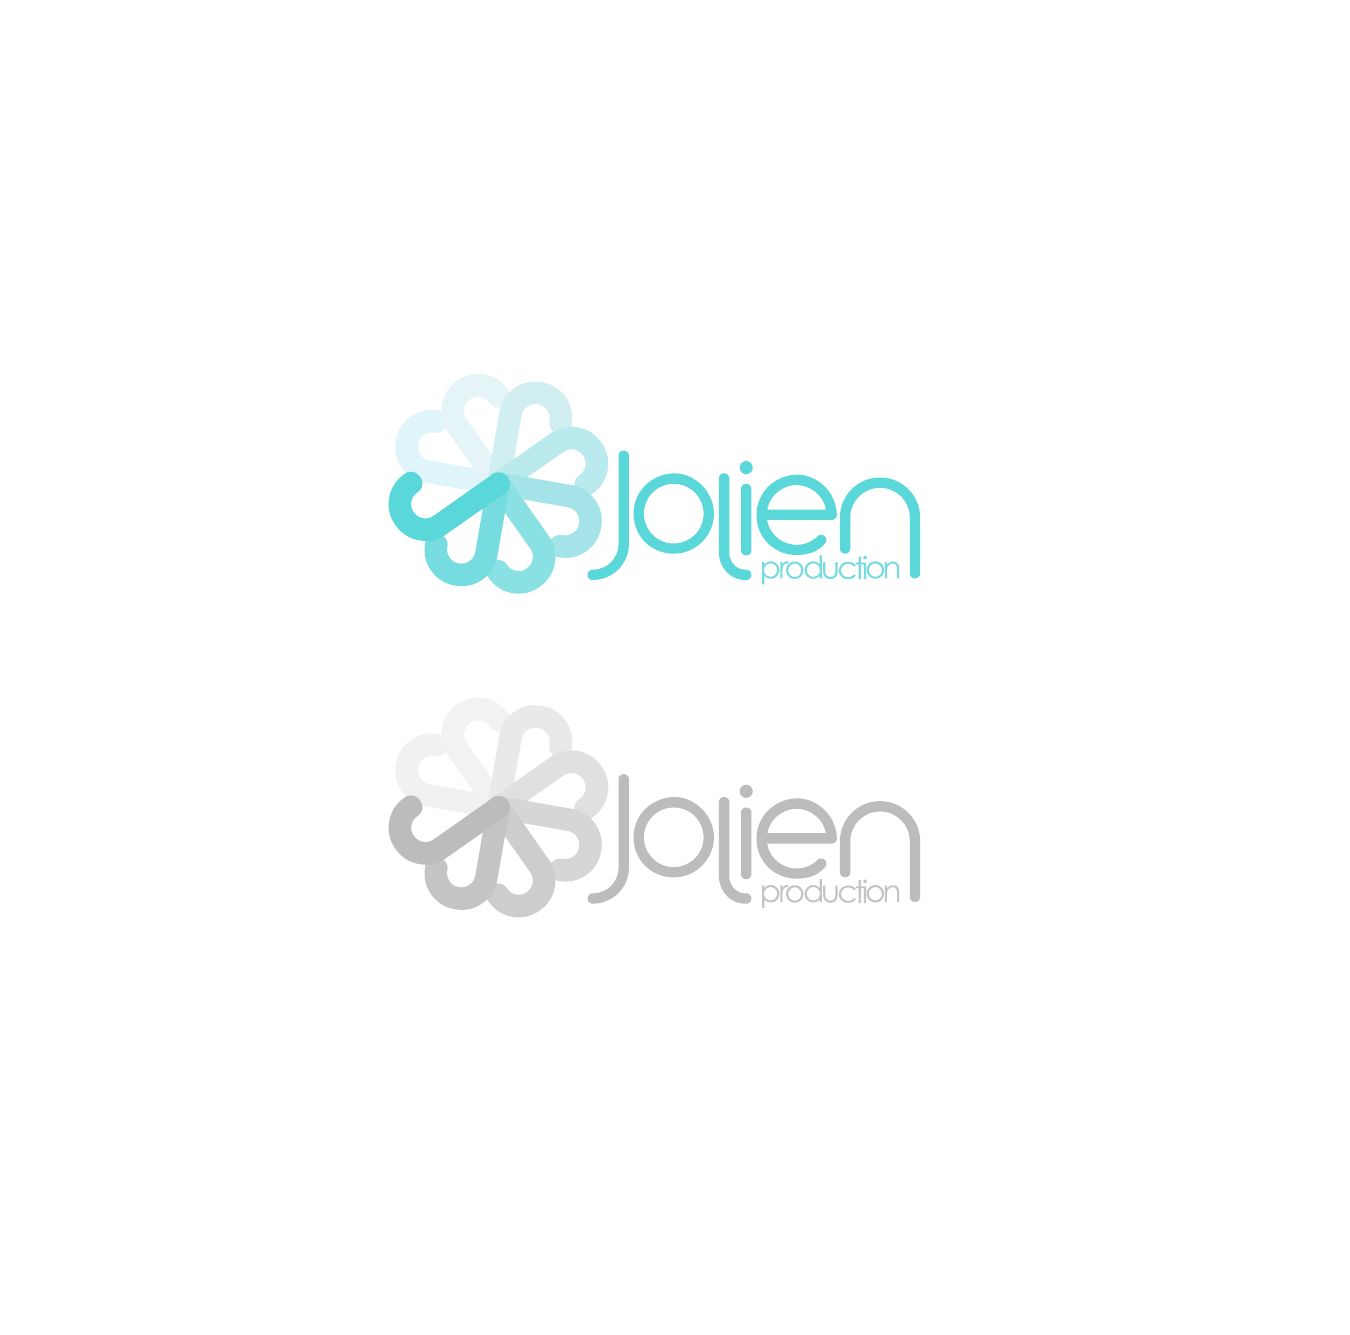 Логотип и фирменный стиль для Jolien Production - дизайнер dimma47